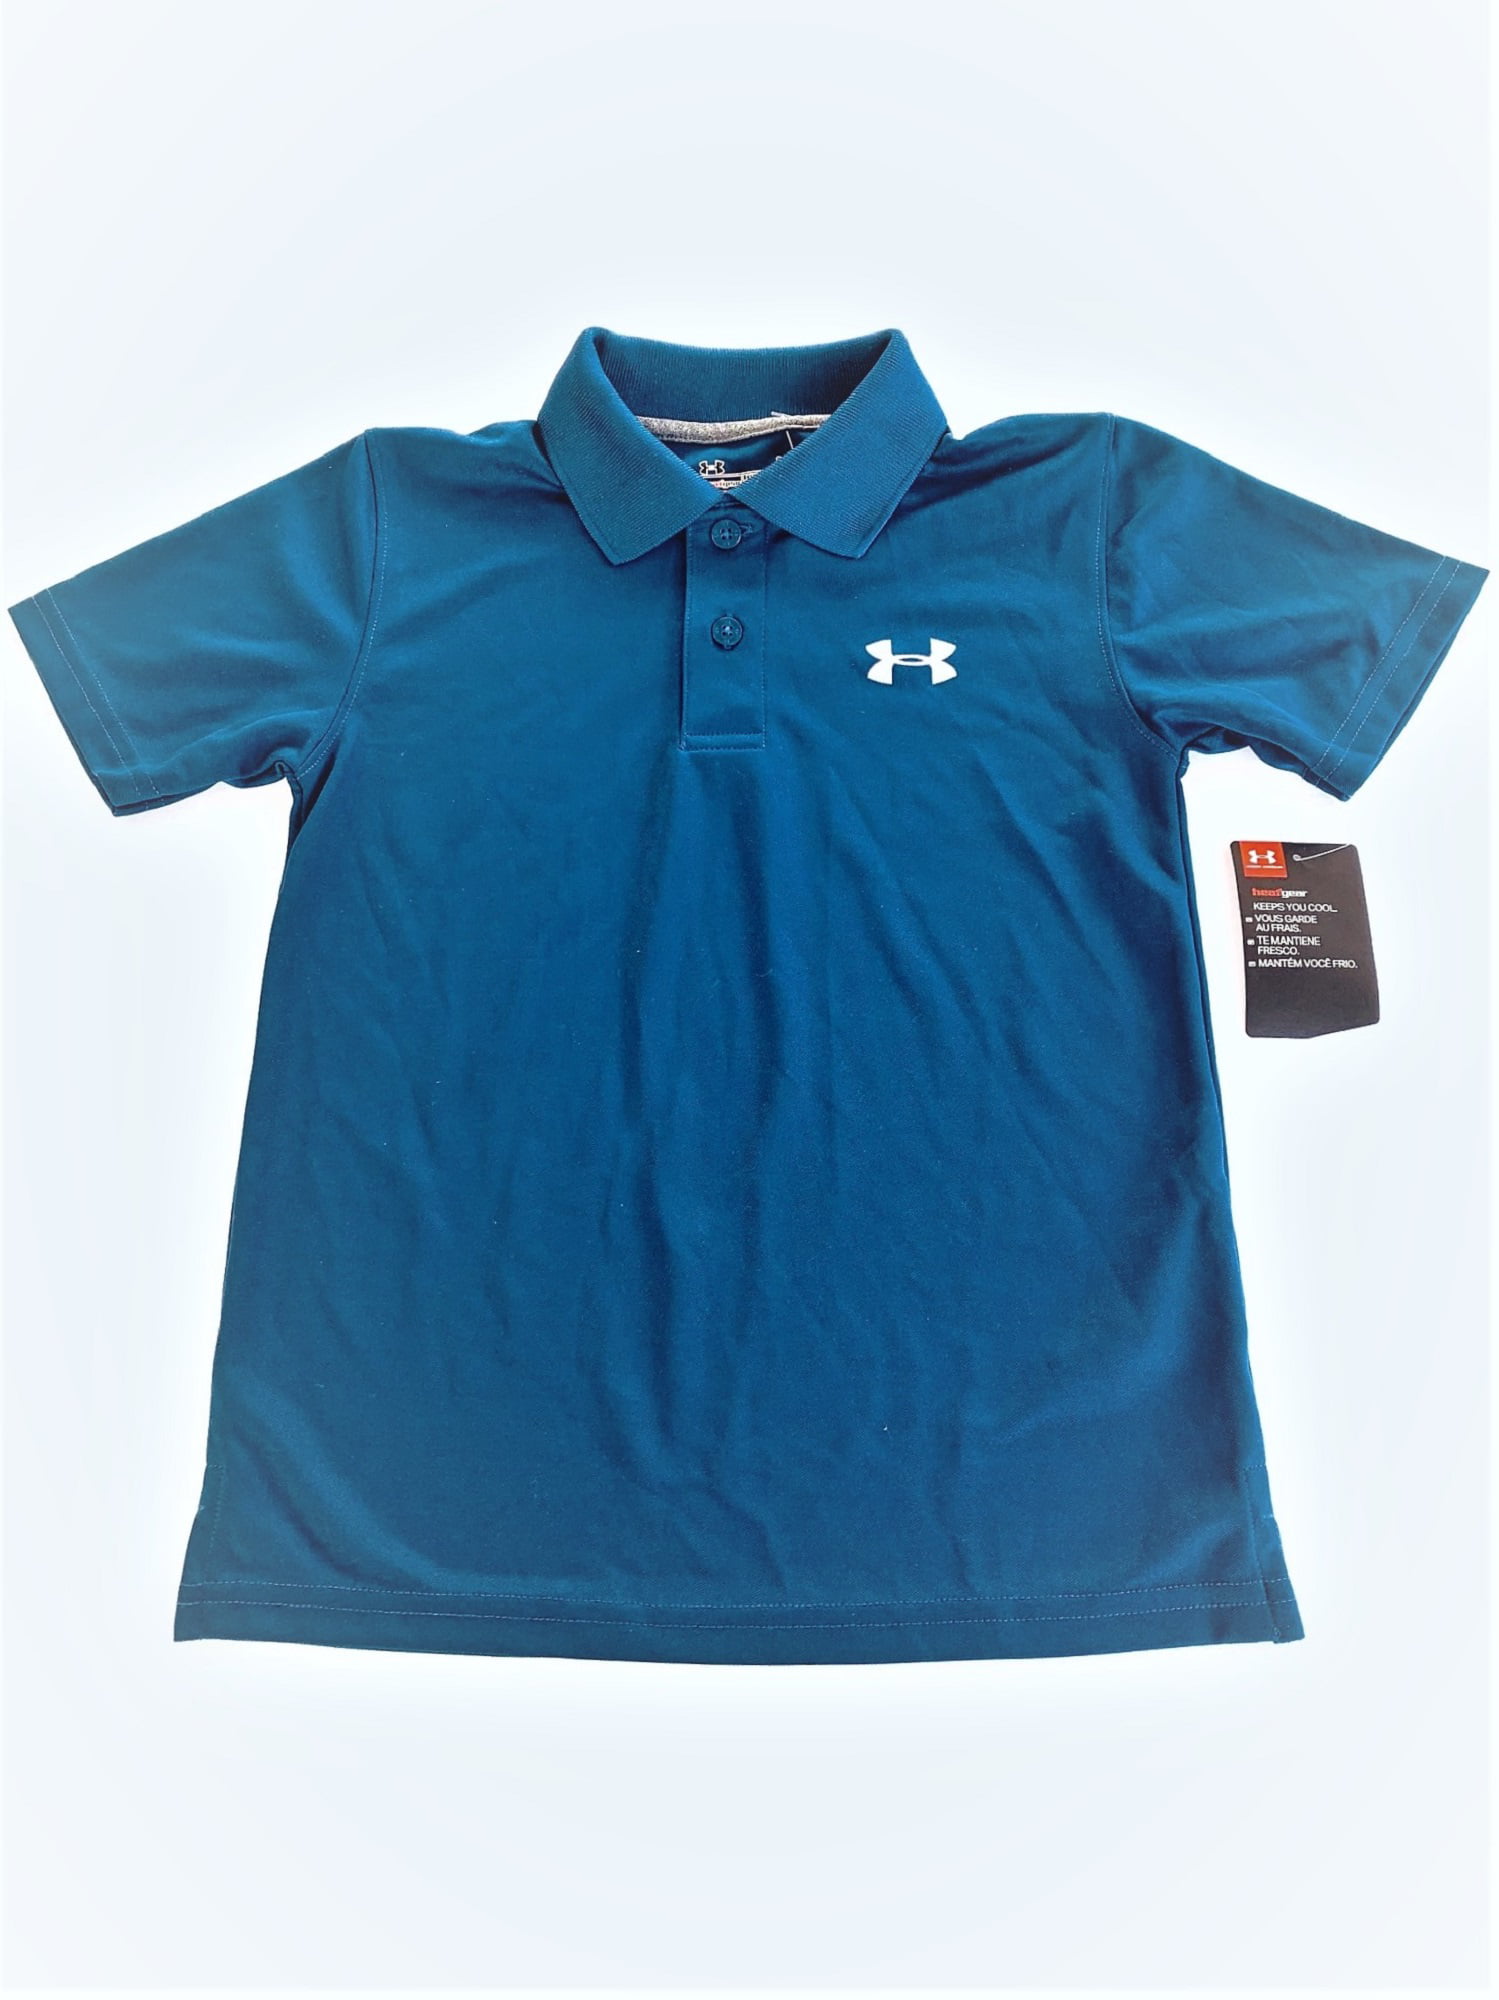 Under Armour Boys Short Sleeve Polo Shirt Black YXS 6 Embroidered Logo NWT 